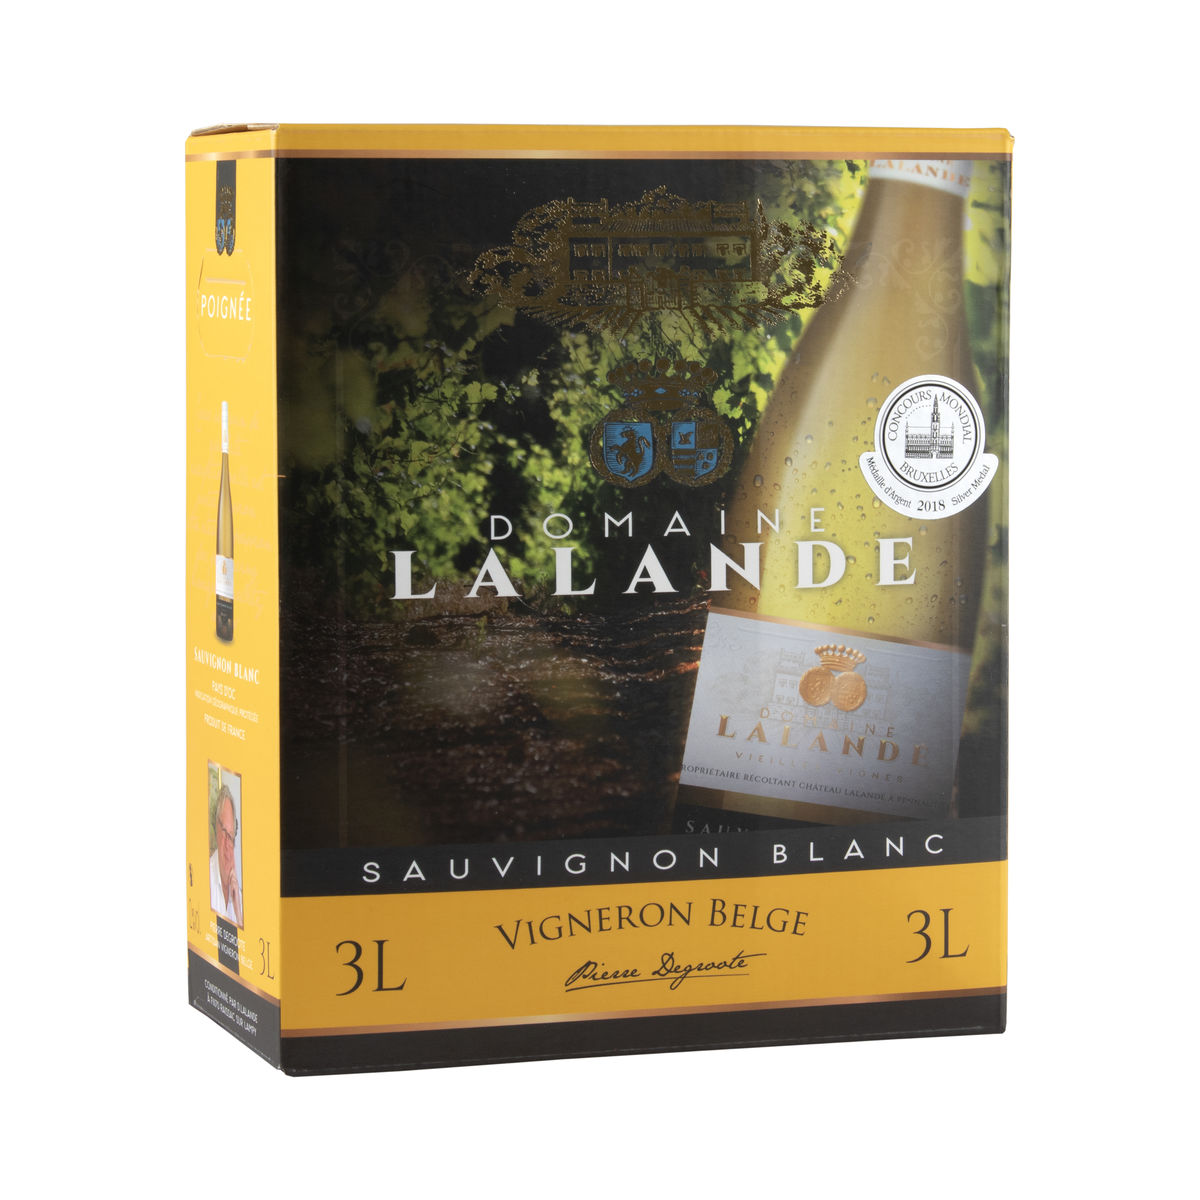 France Domaine Lalande Sauvignon Blanc 3L